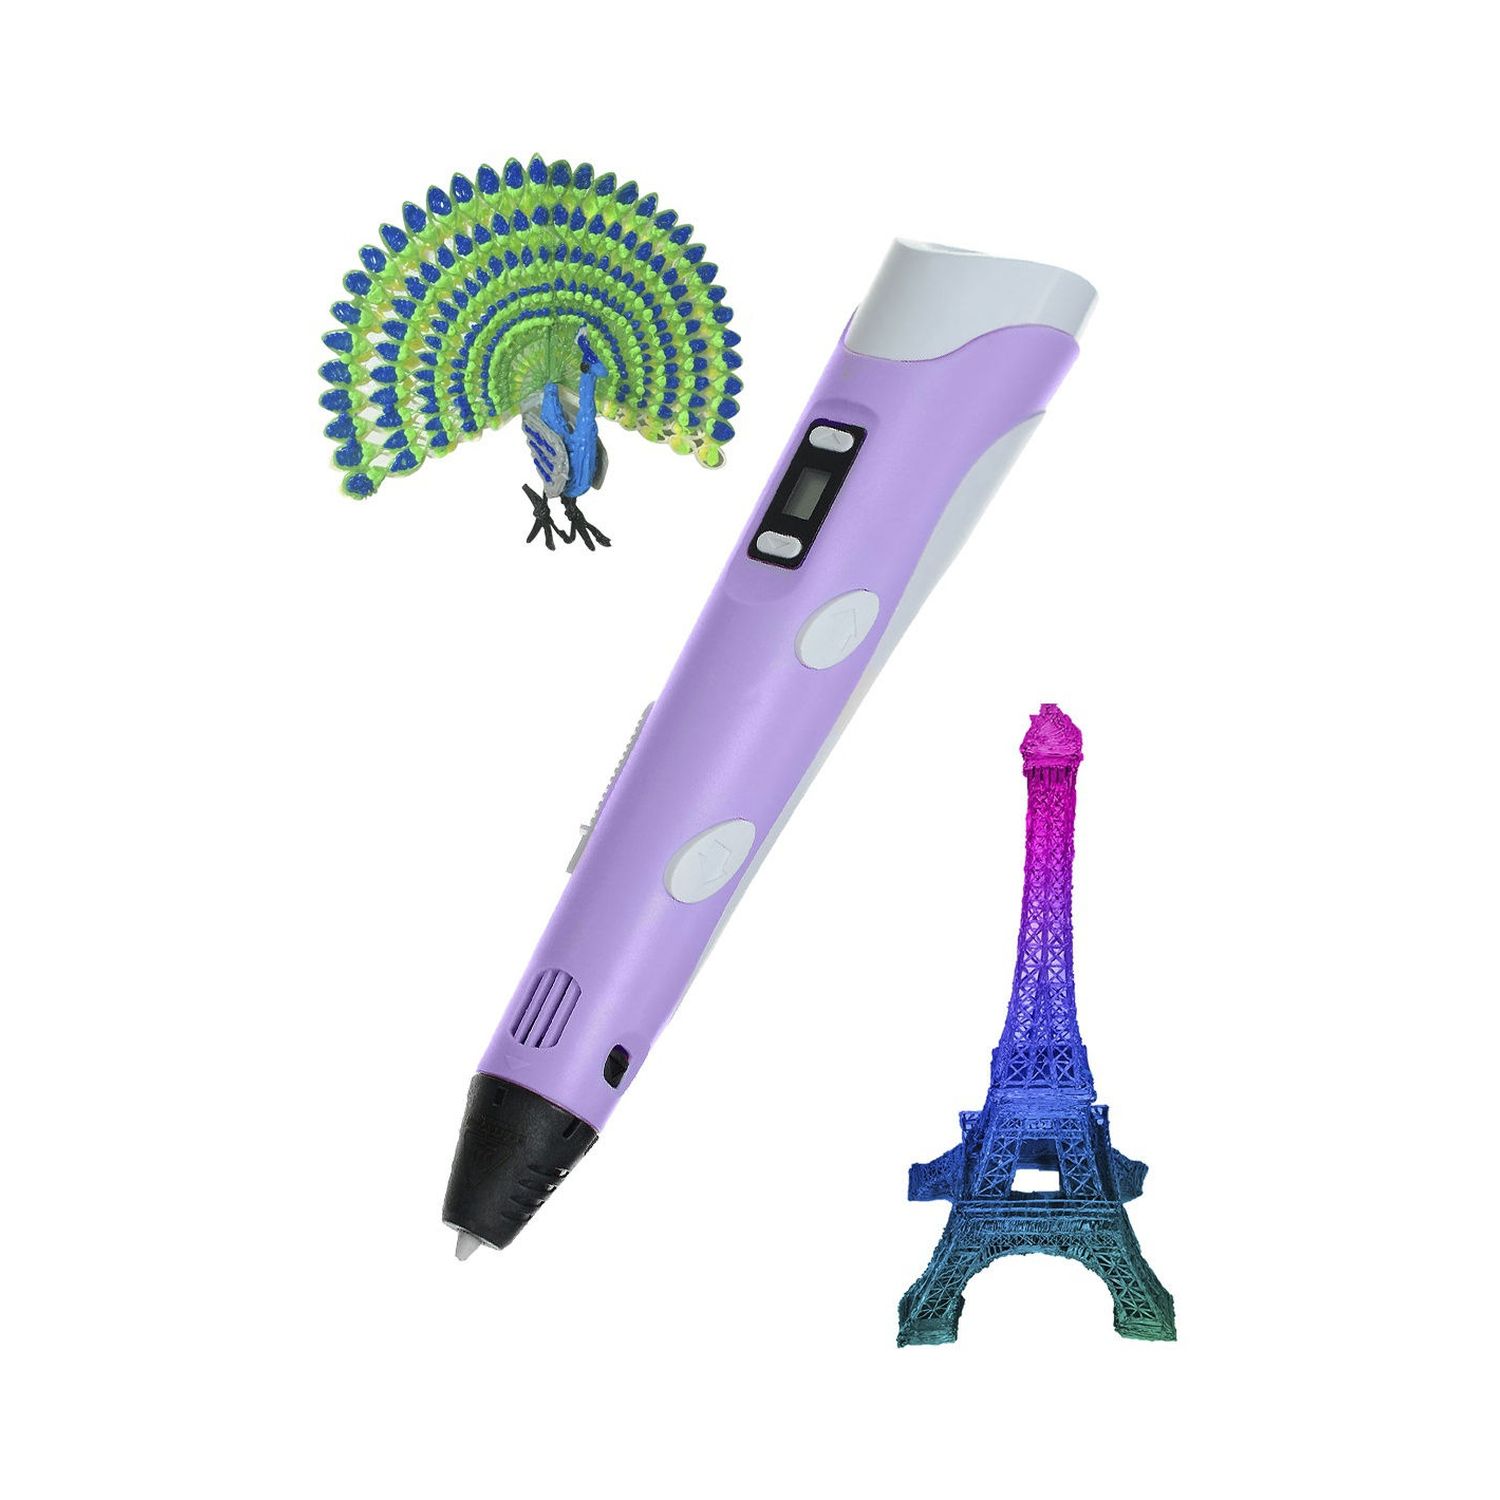 3D ручка Rabizy с LCD дисплеем - фото 3